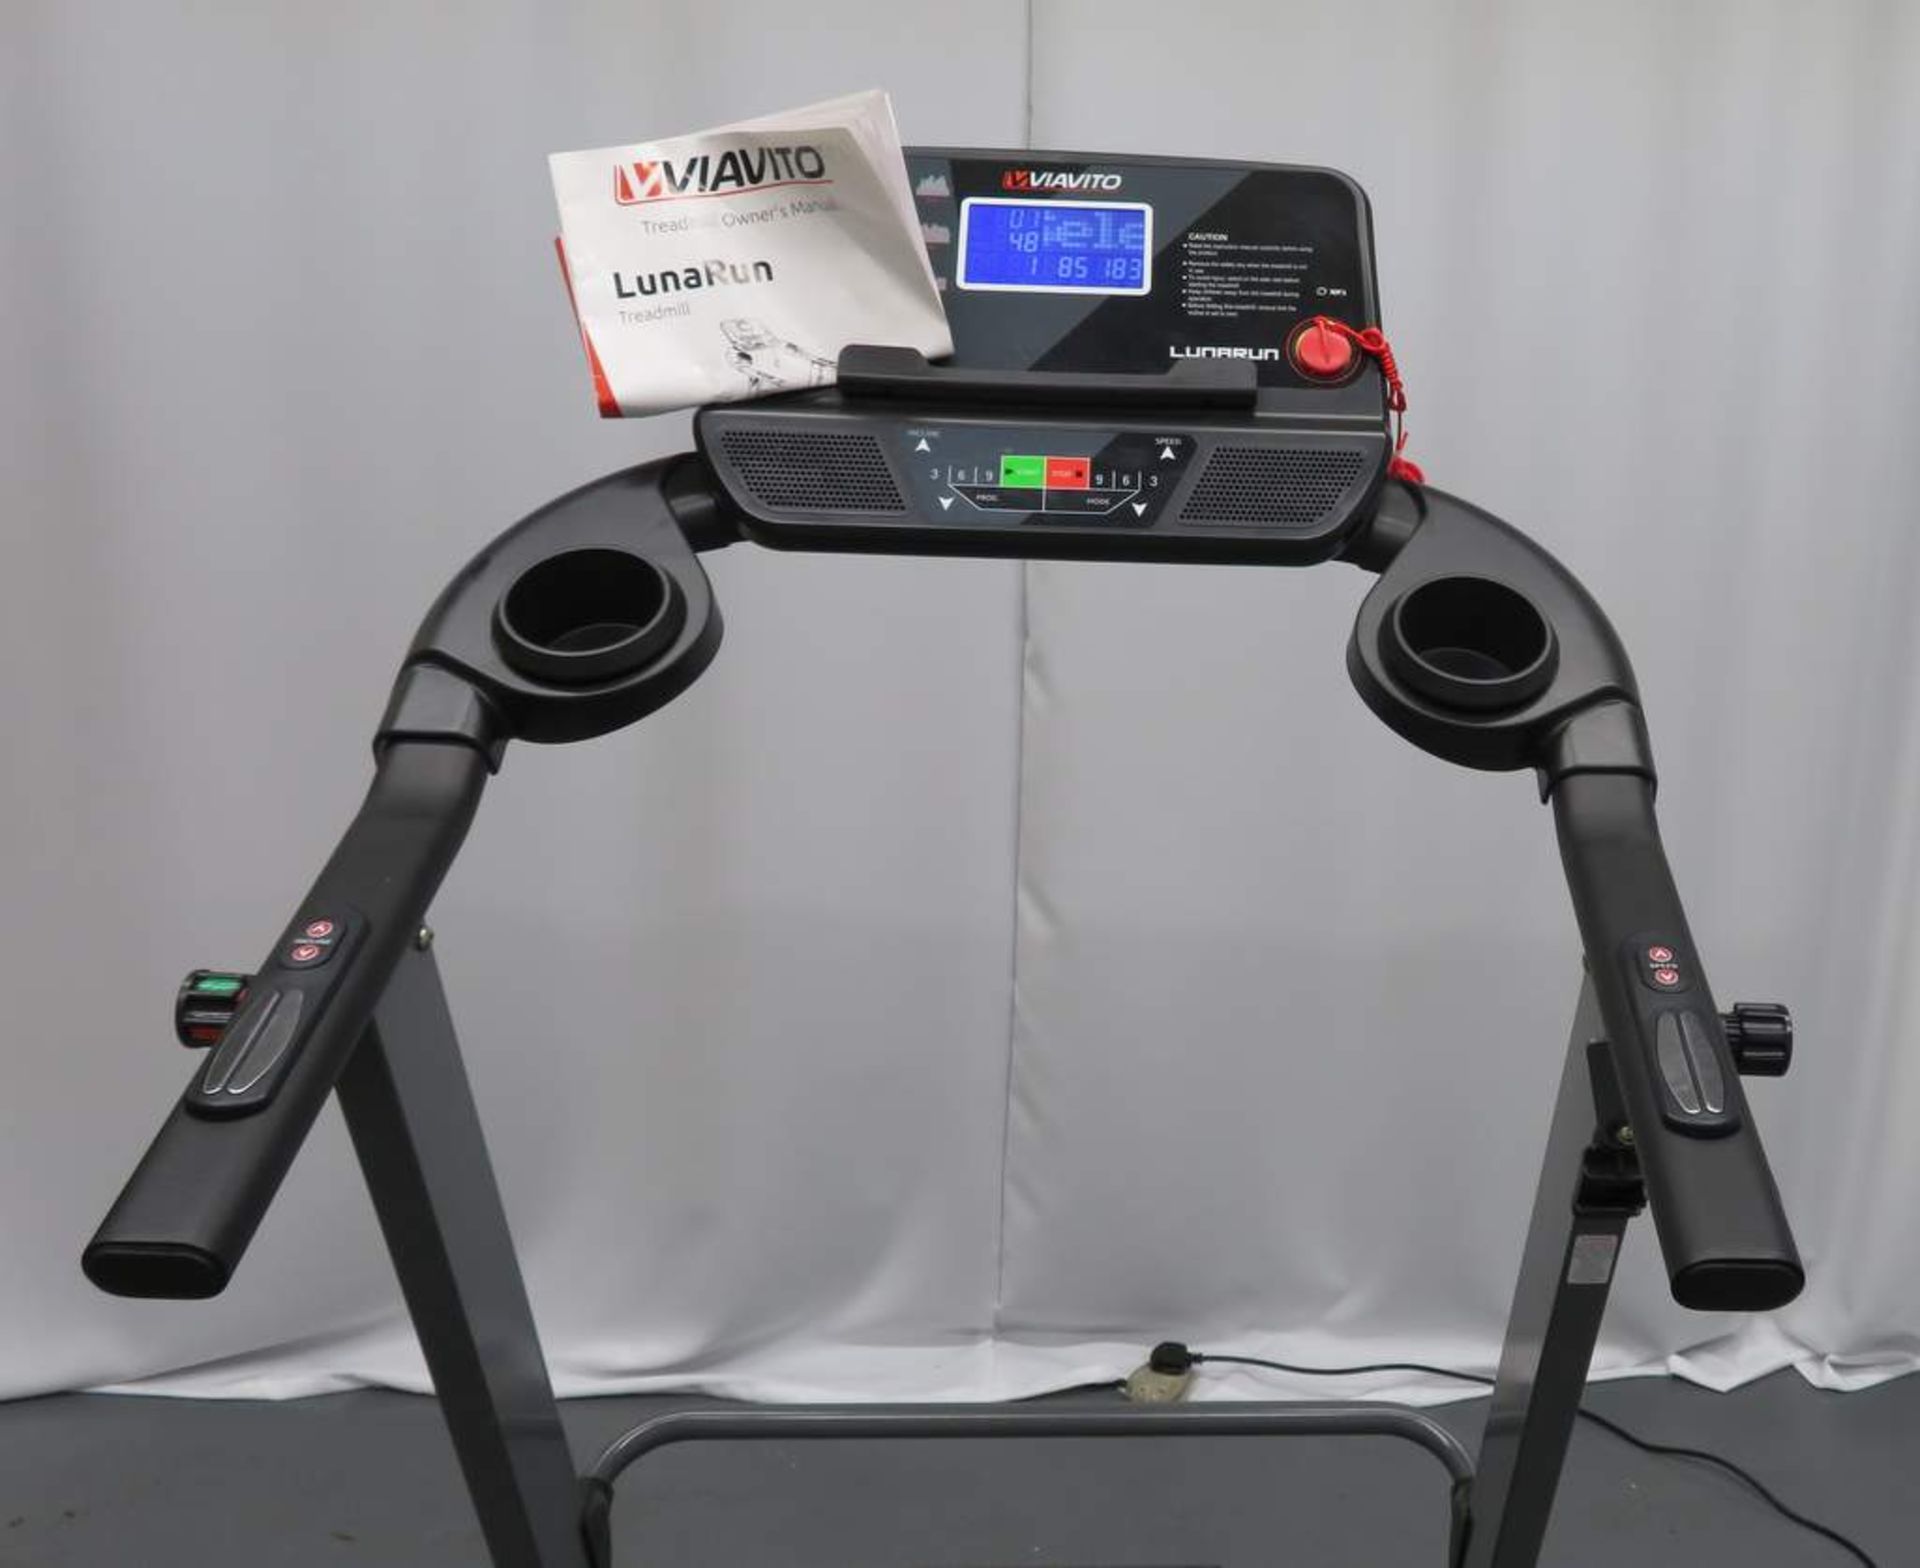 Viavito Luna Run Treadmill - Foldable. - Image 4 of 6